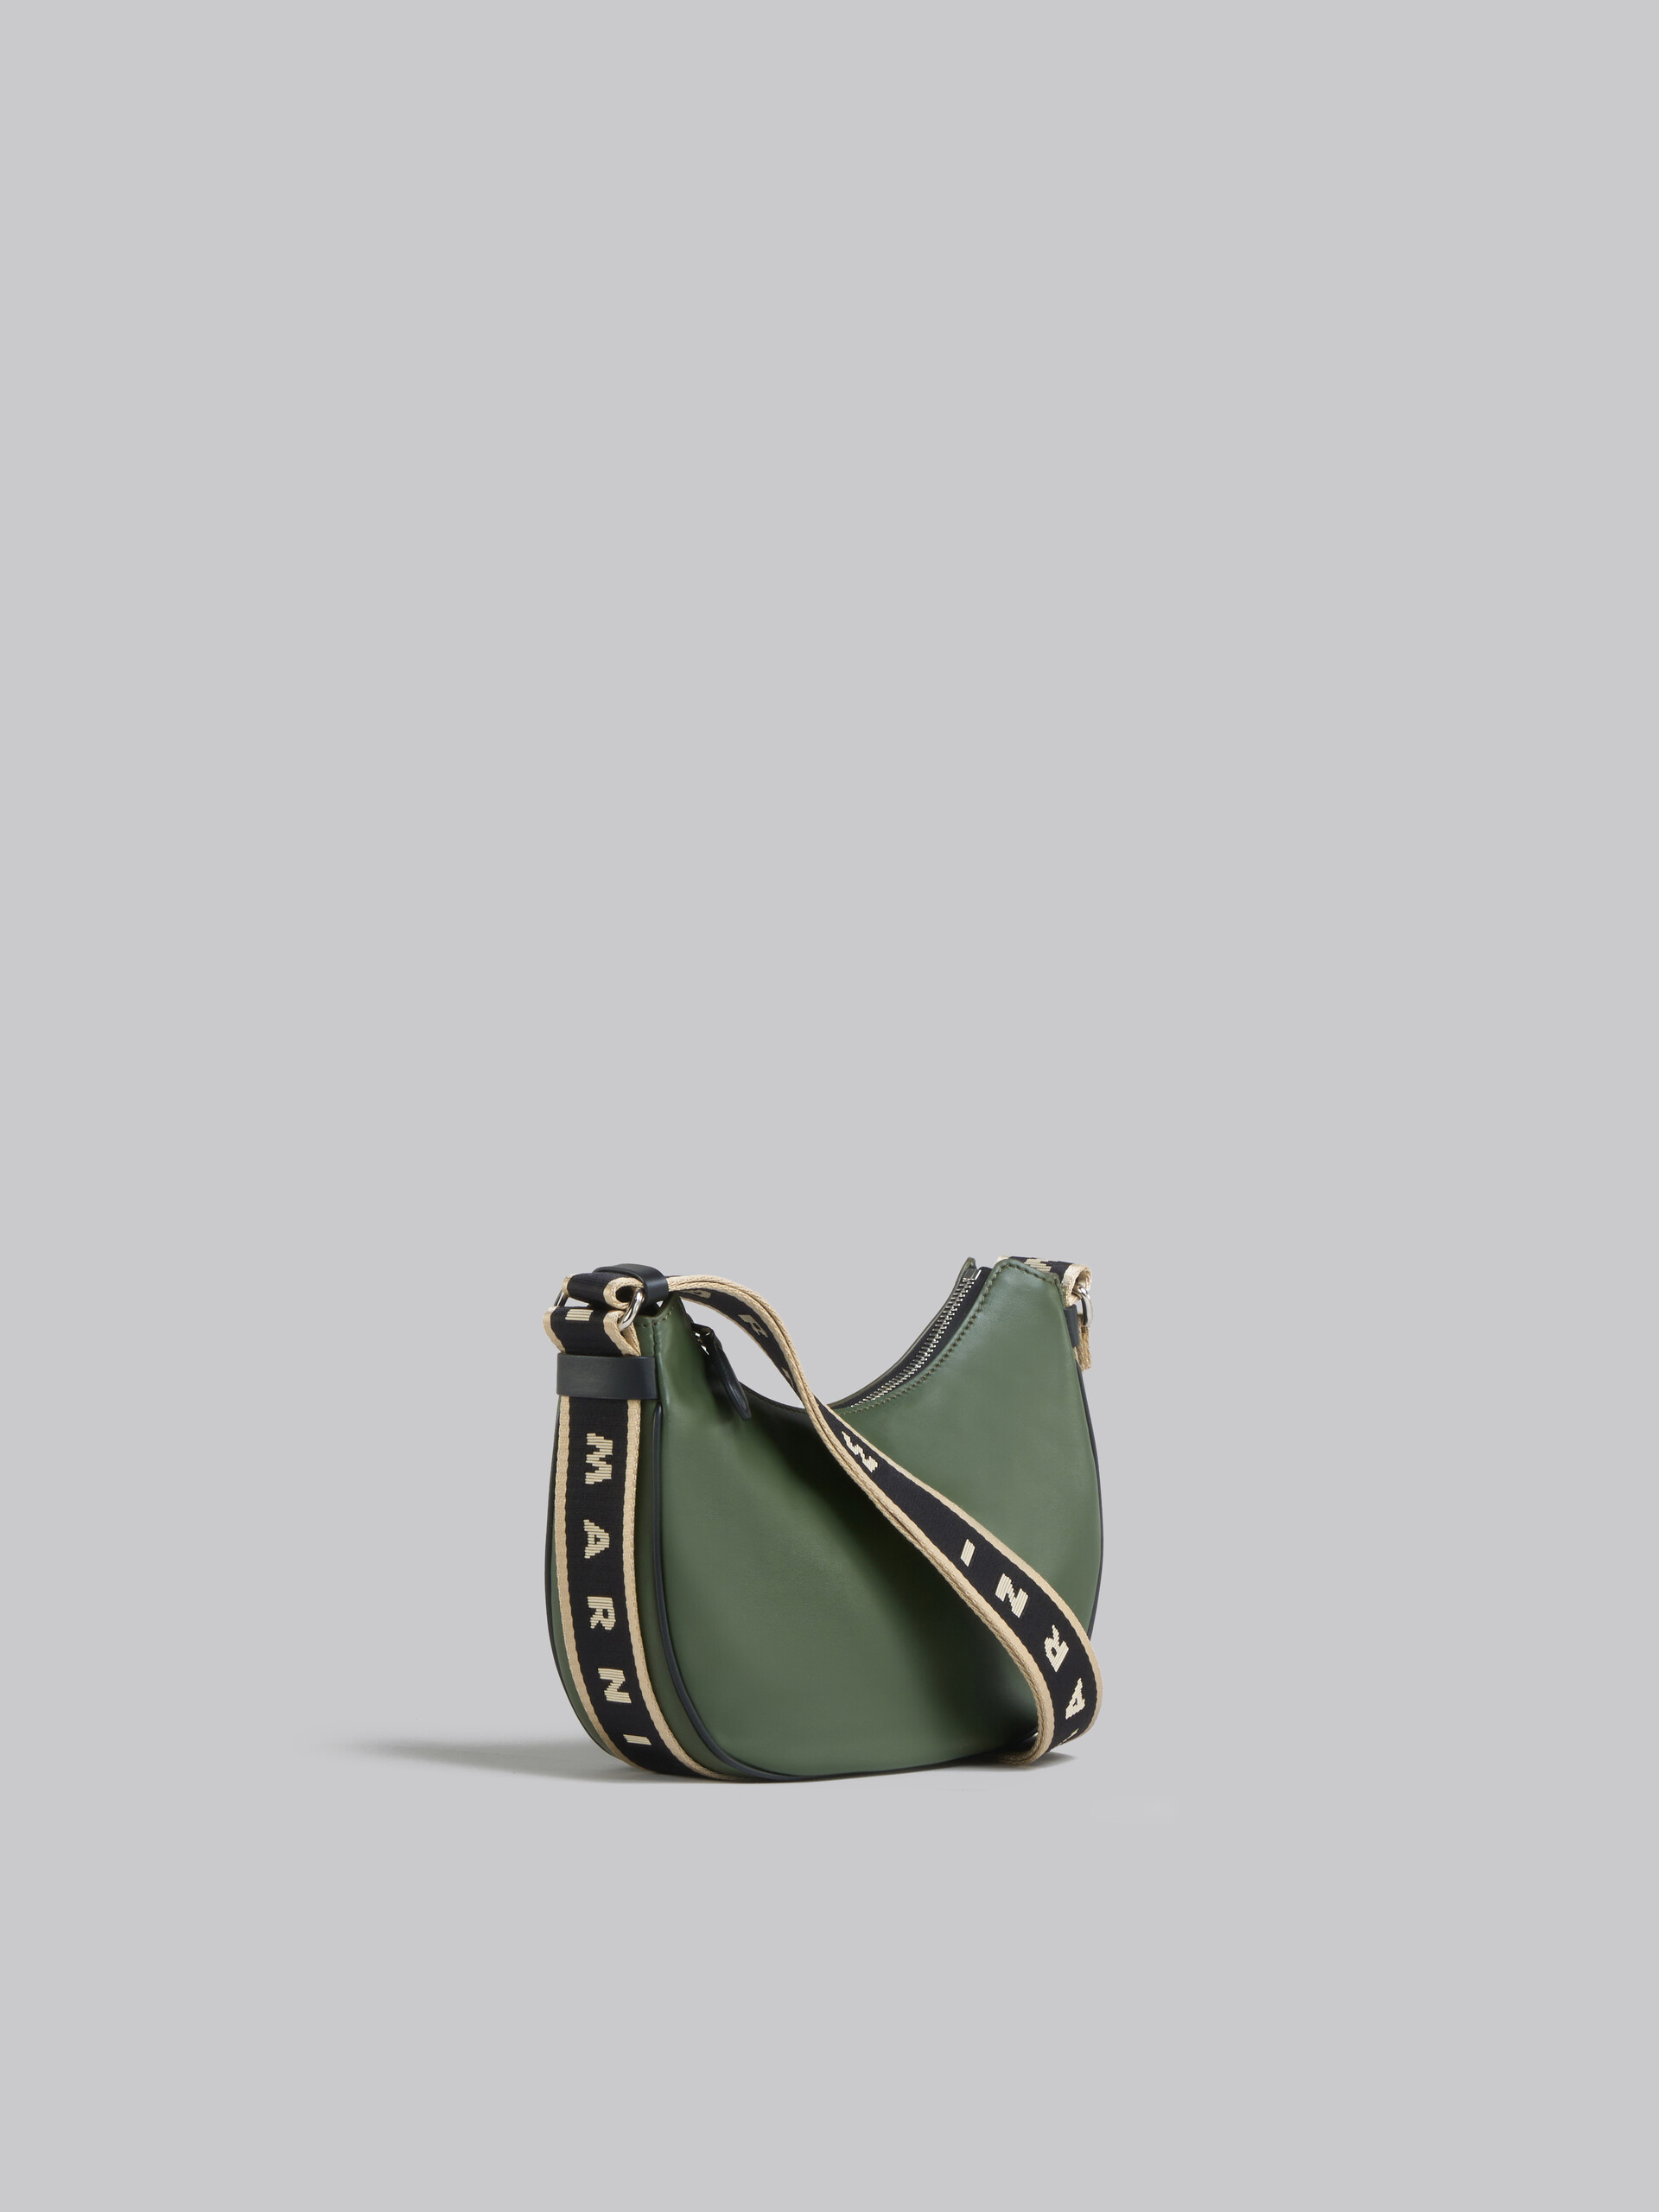 Bey Bag in green leather - Shoulder Bag - Image 6